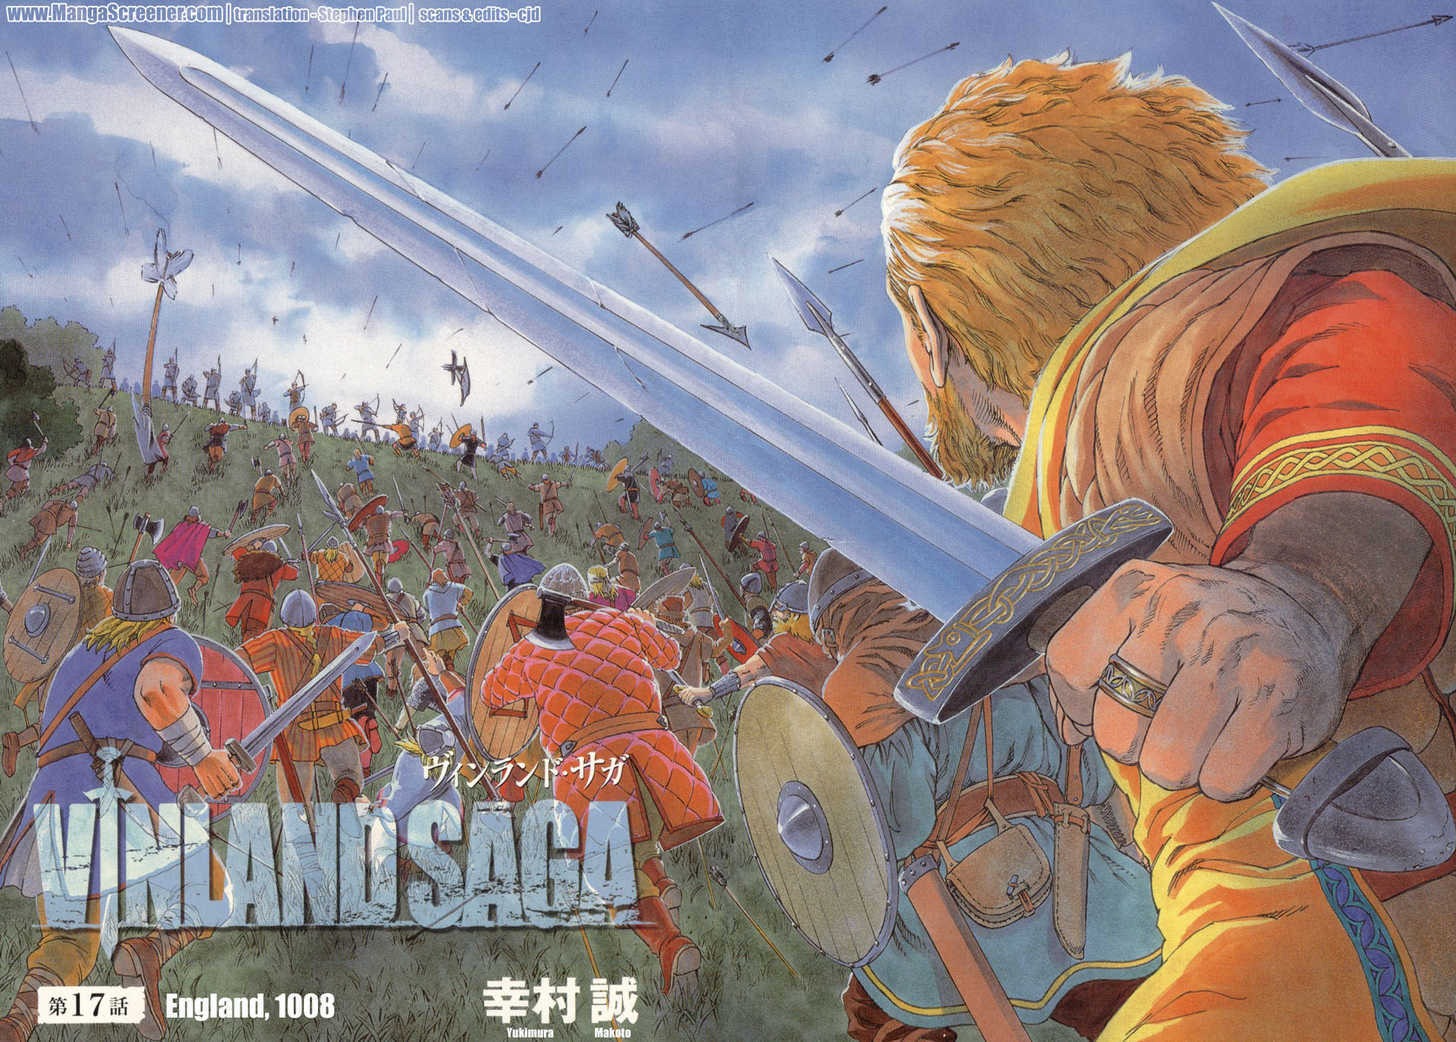 Vinland Saga 27 Japanese Comic Book Manga Makoto Yukimura ヴィンランド・サガ New